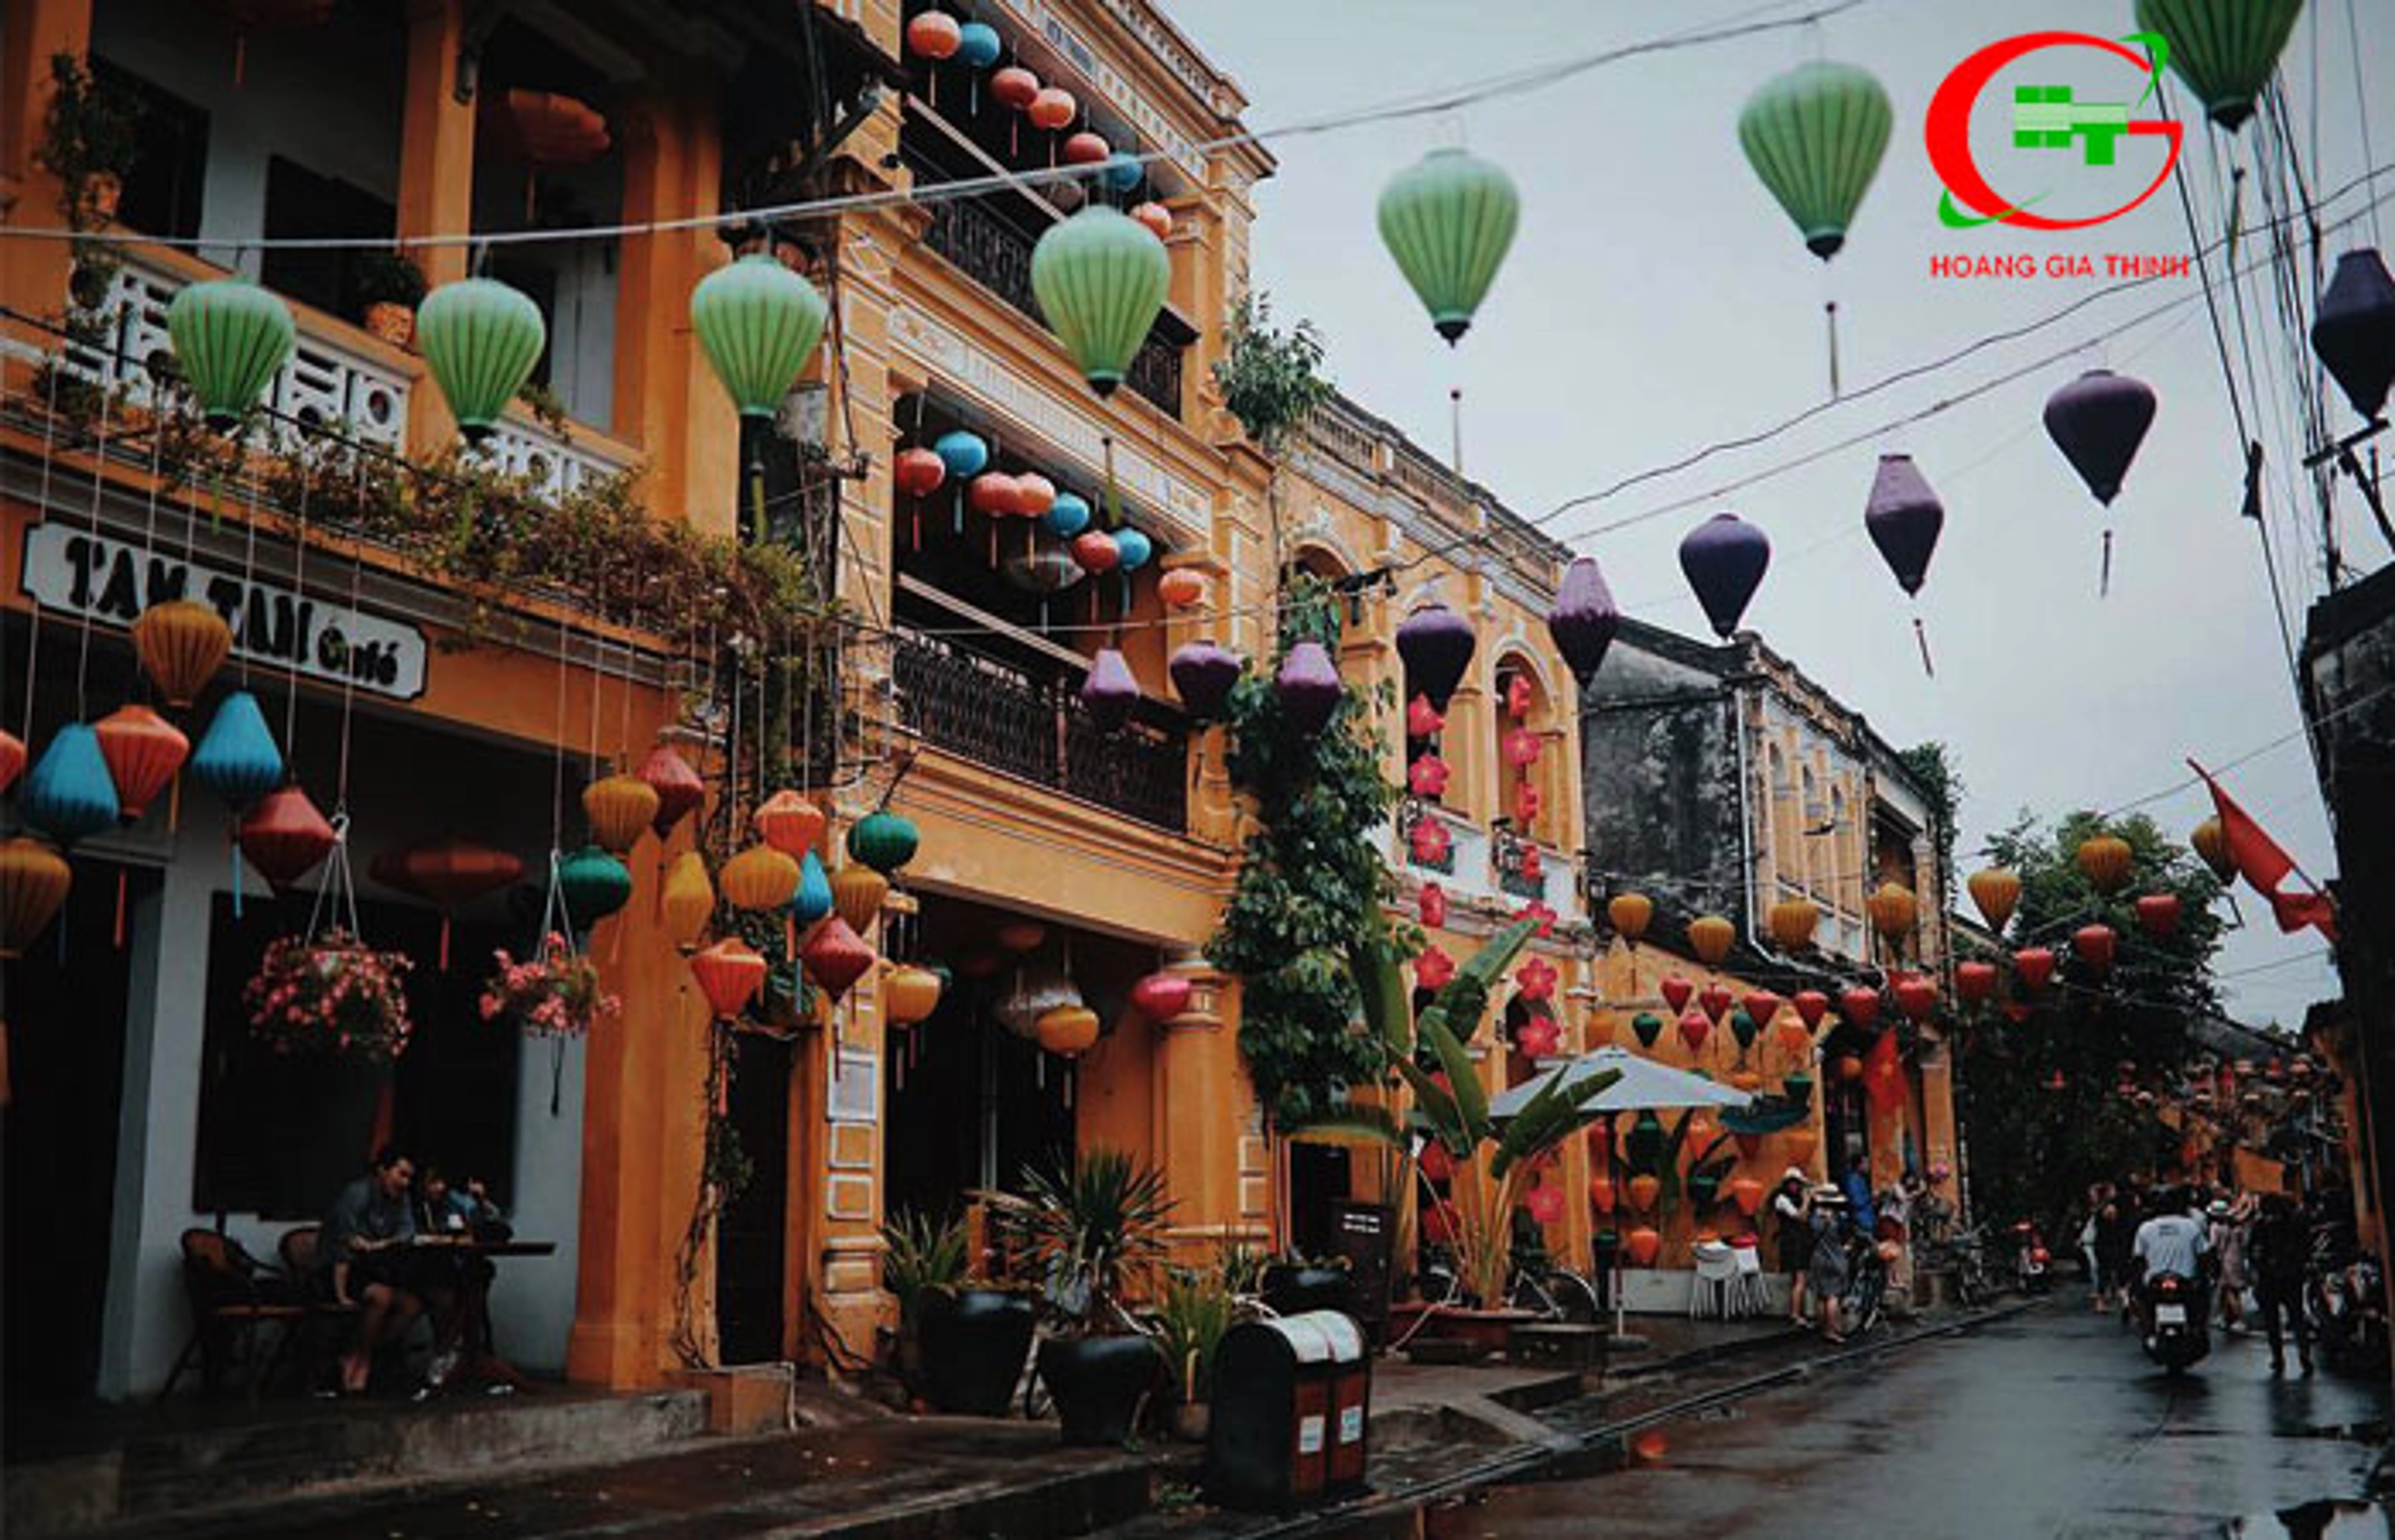 Hanoi Old Quarter - A journey to explore a unique cultural destination